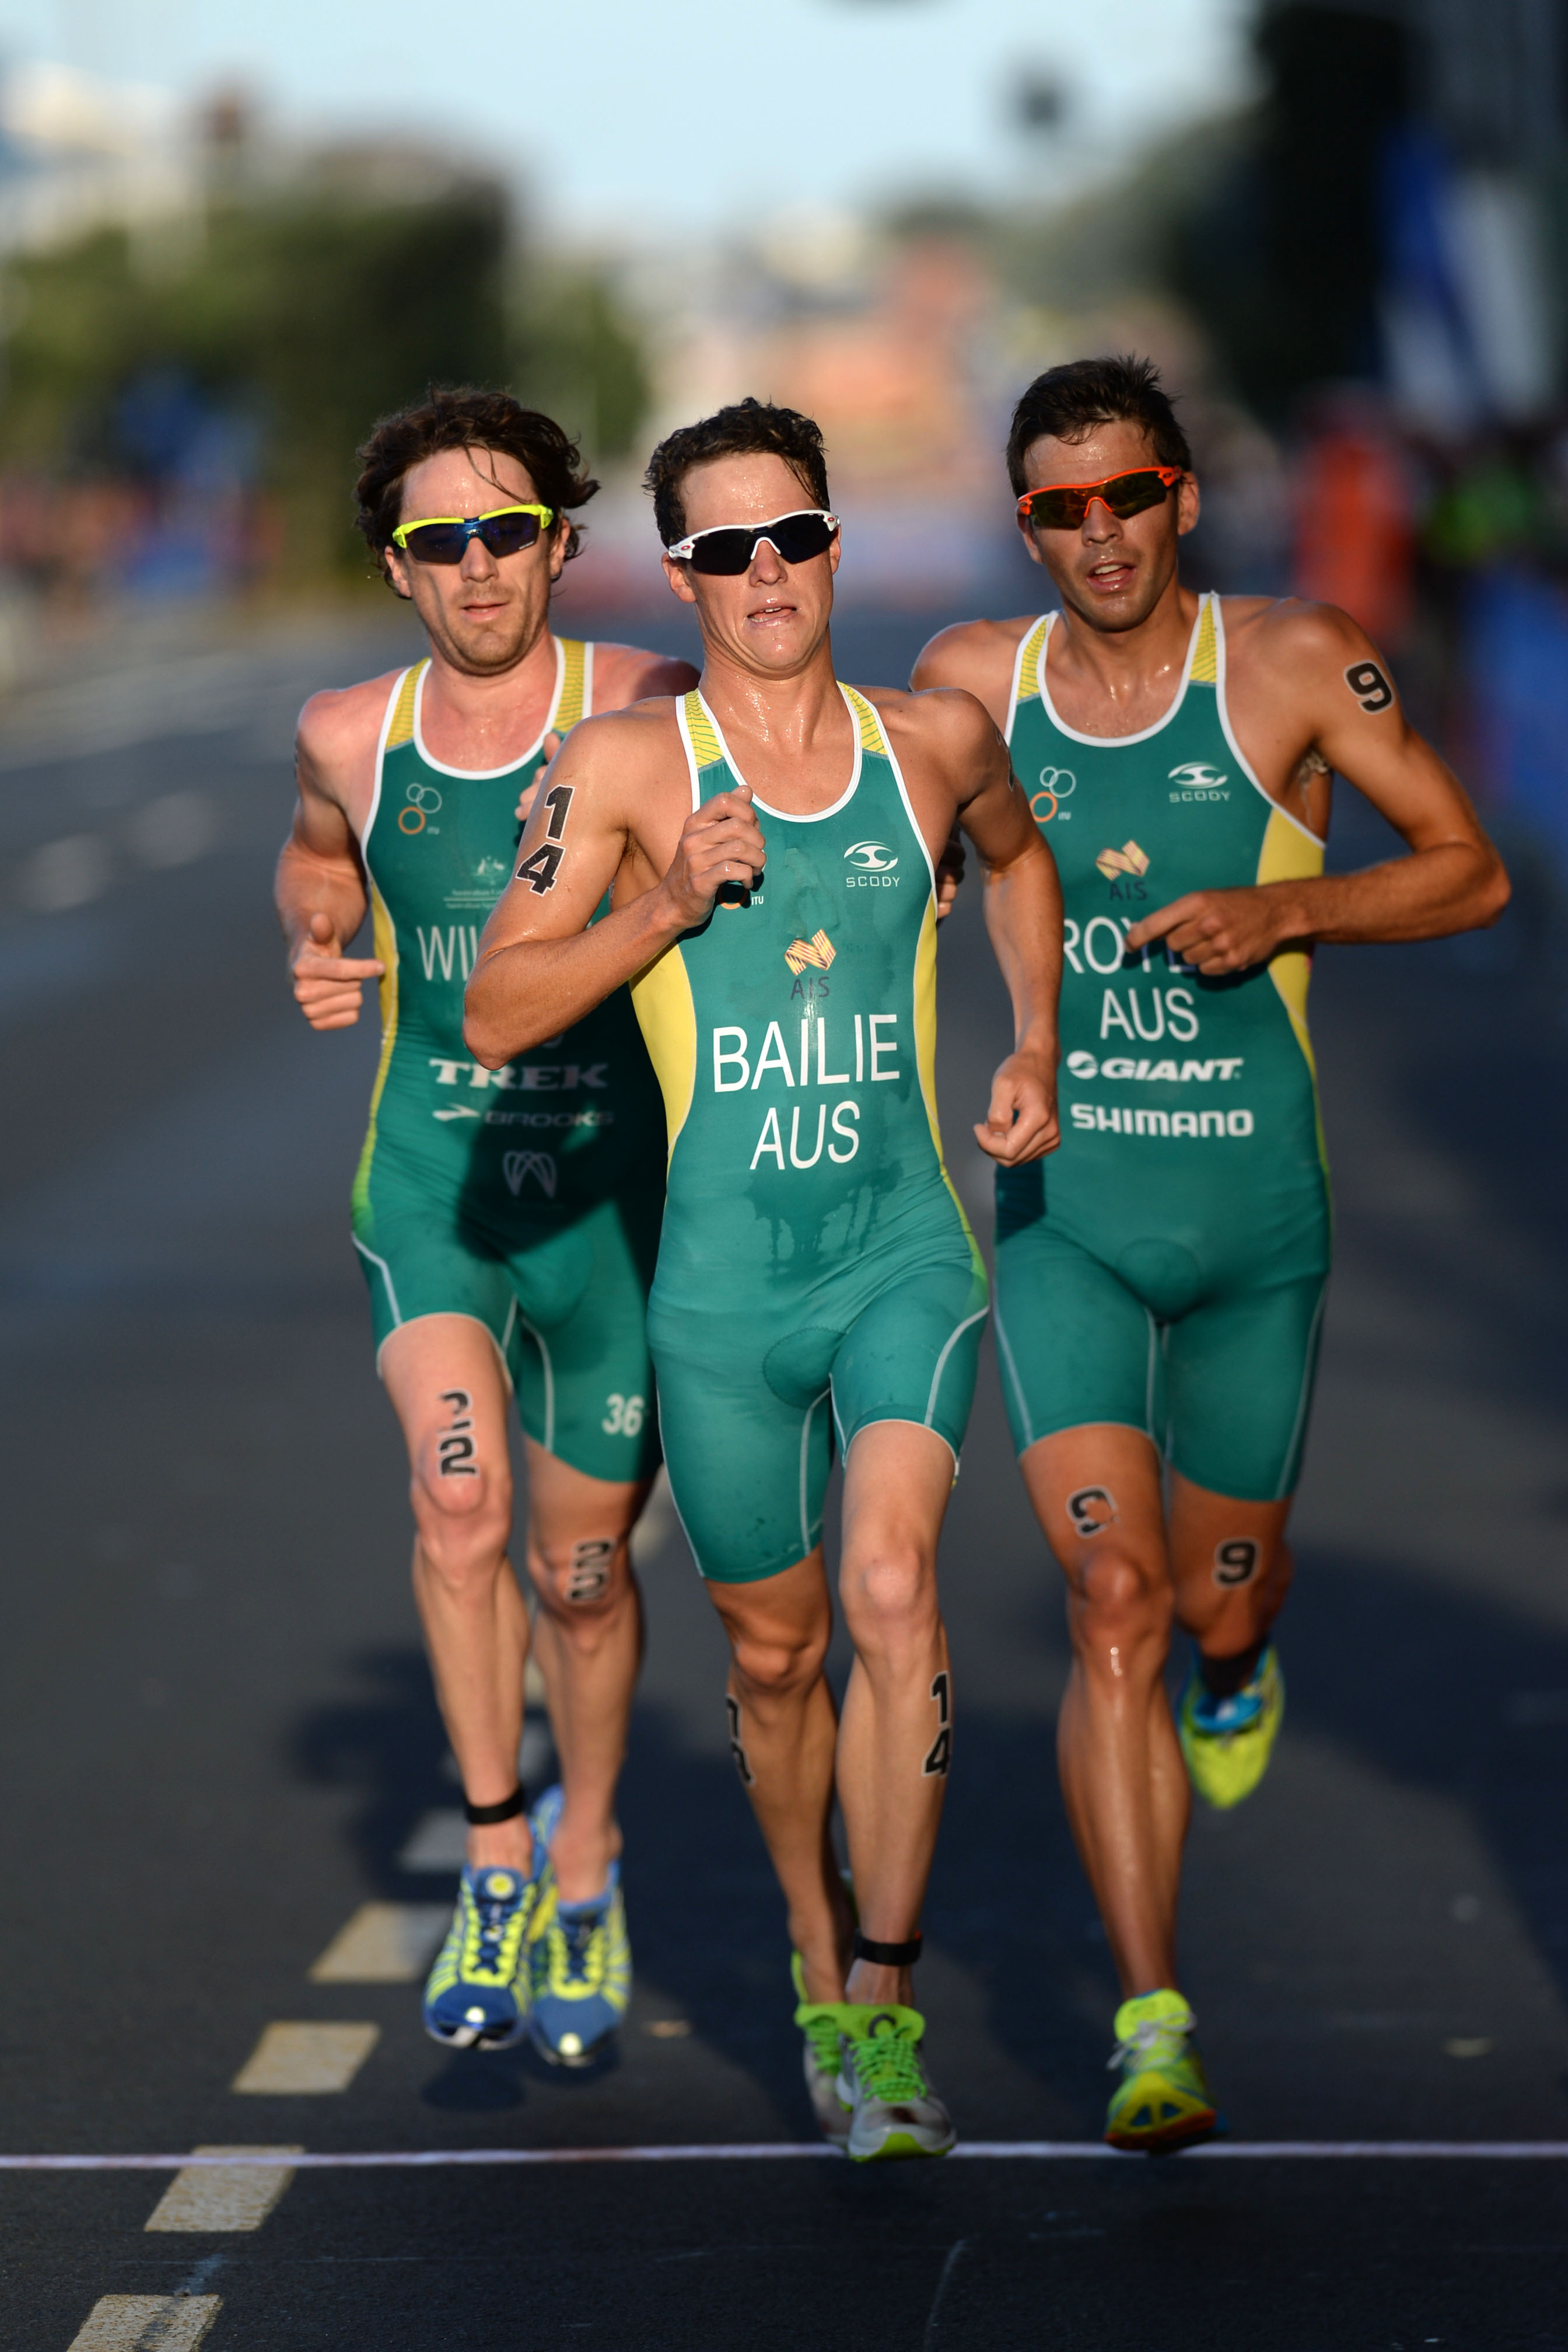 Aussie boys Royle, Wilson and Bailie Auckland WTS 2014